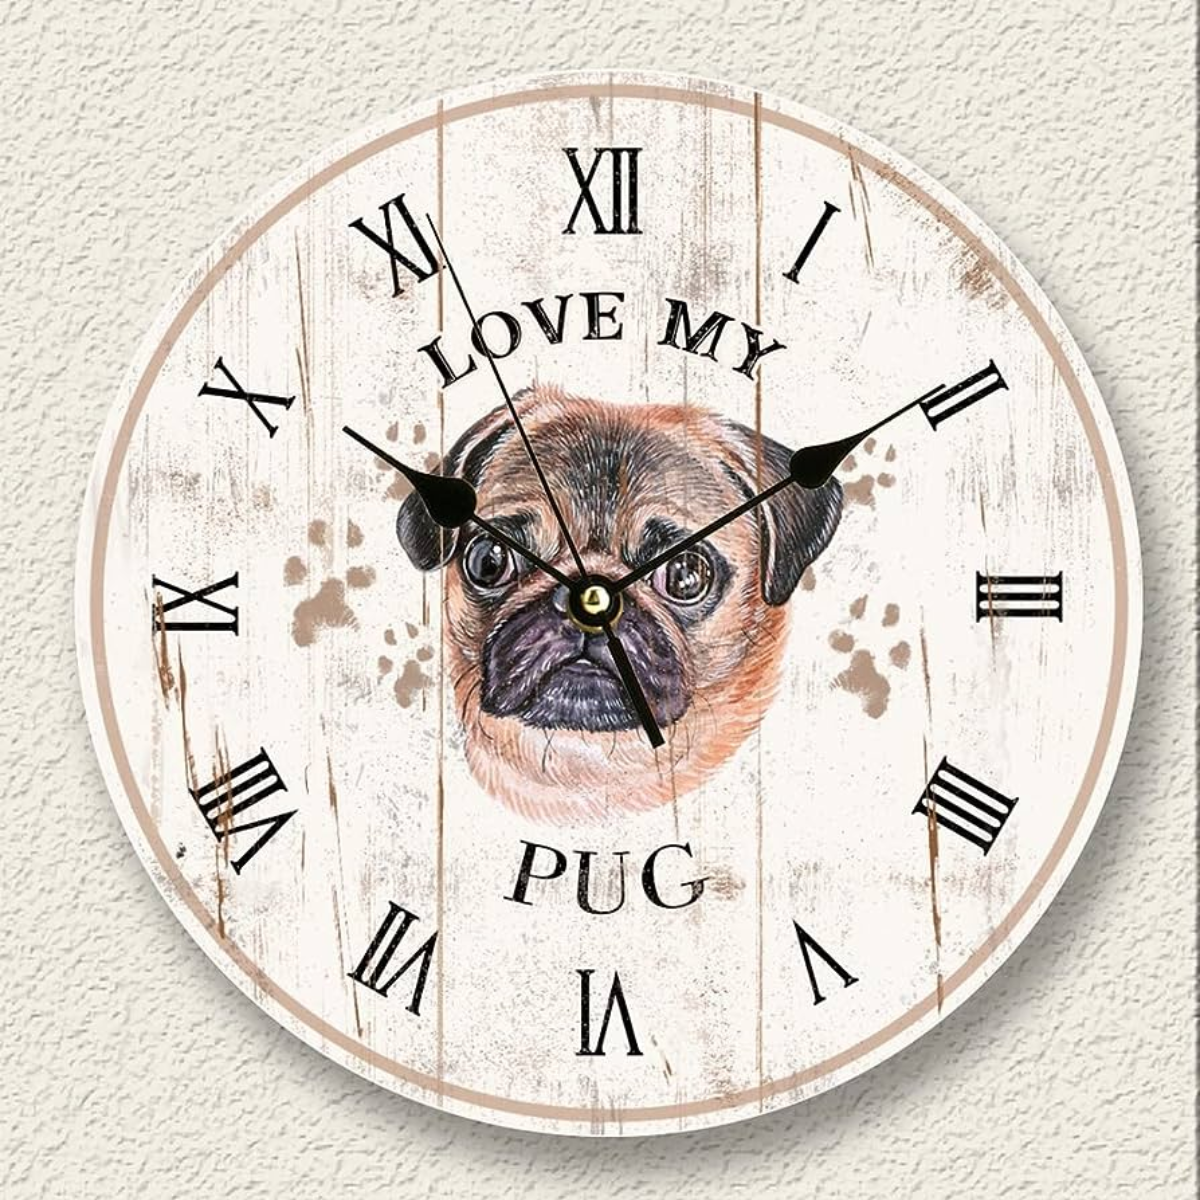 Dog themed Wall Clock